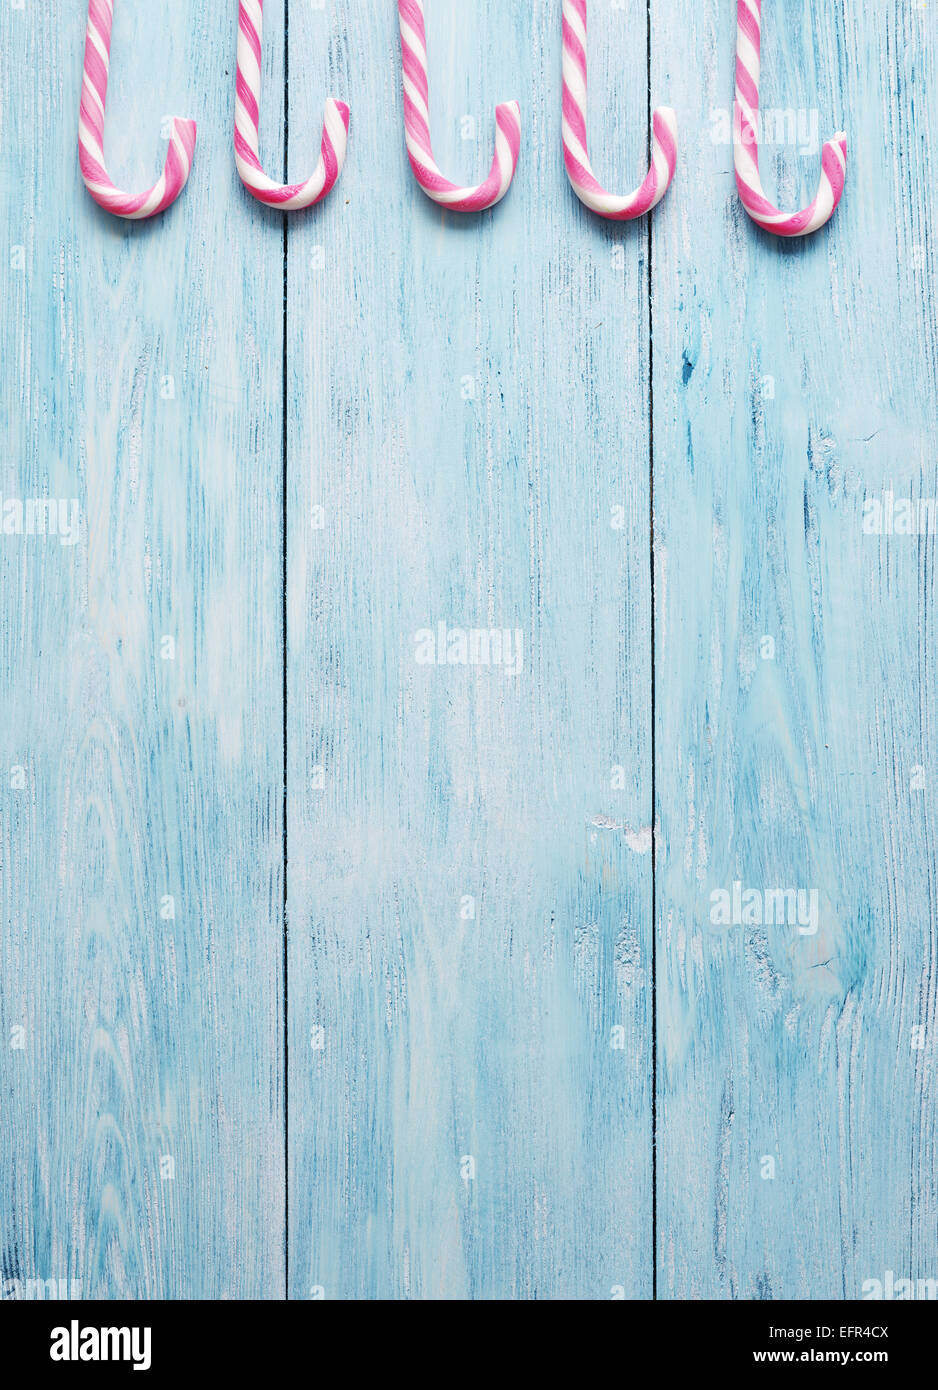 Candy Stöcke auf blauem Hintergrund aus Holz. Stockfoto